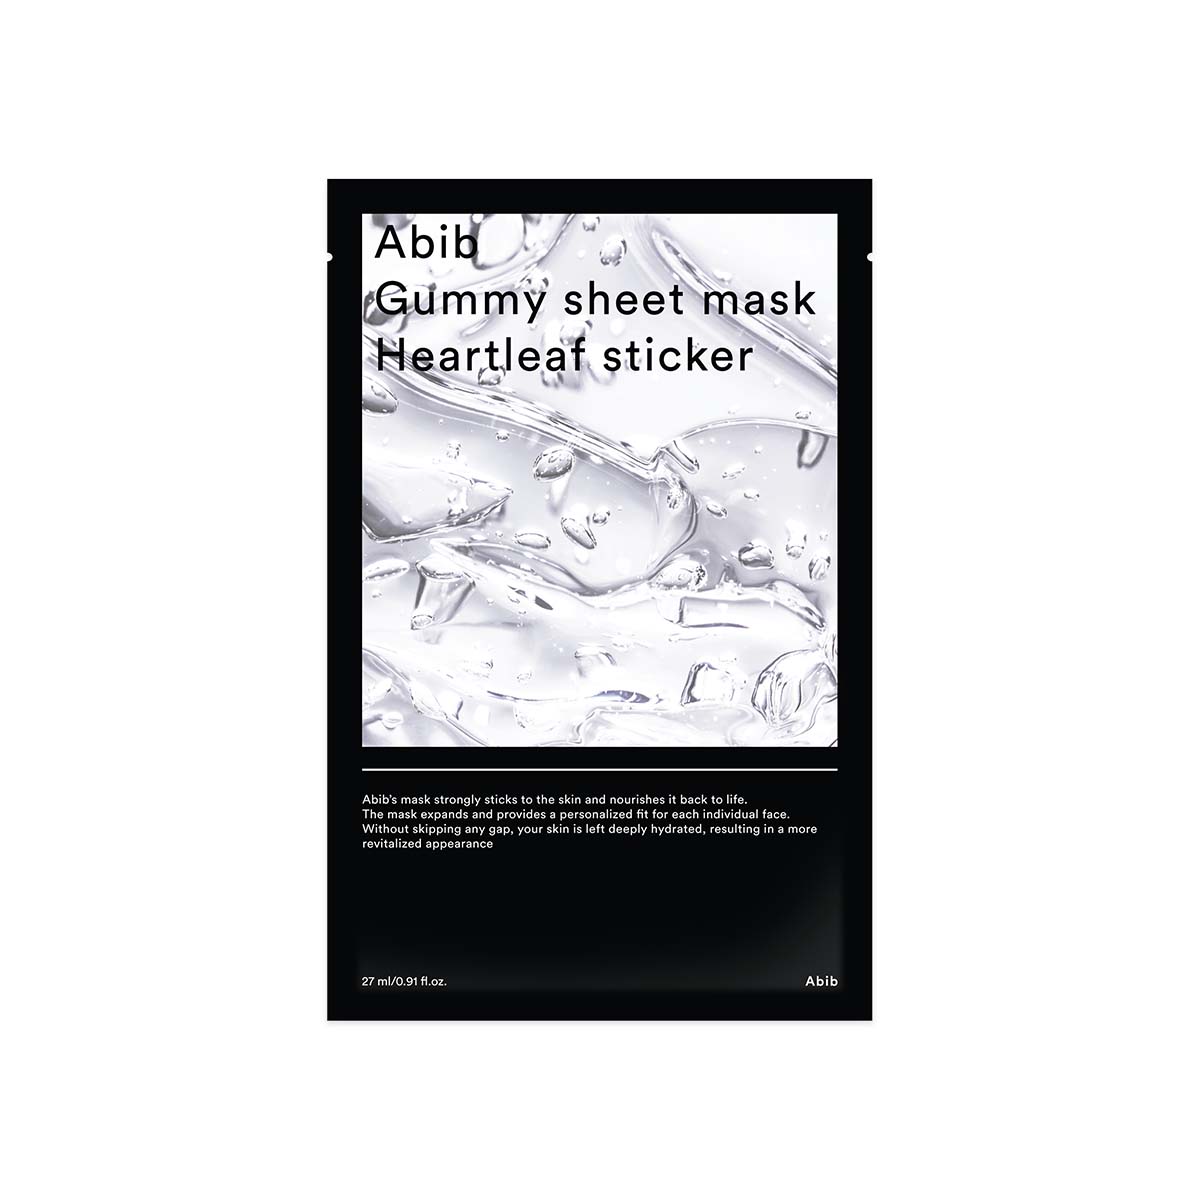 Abib - Gummy Sheet Mask Heartleaf Sticker